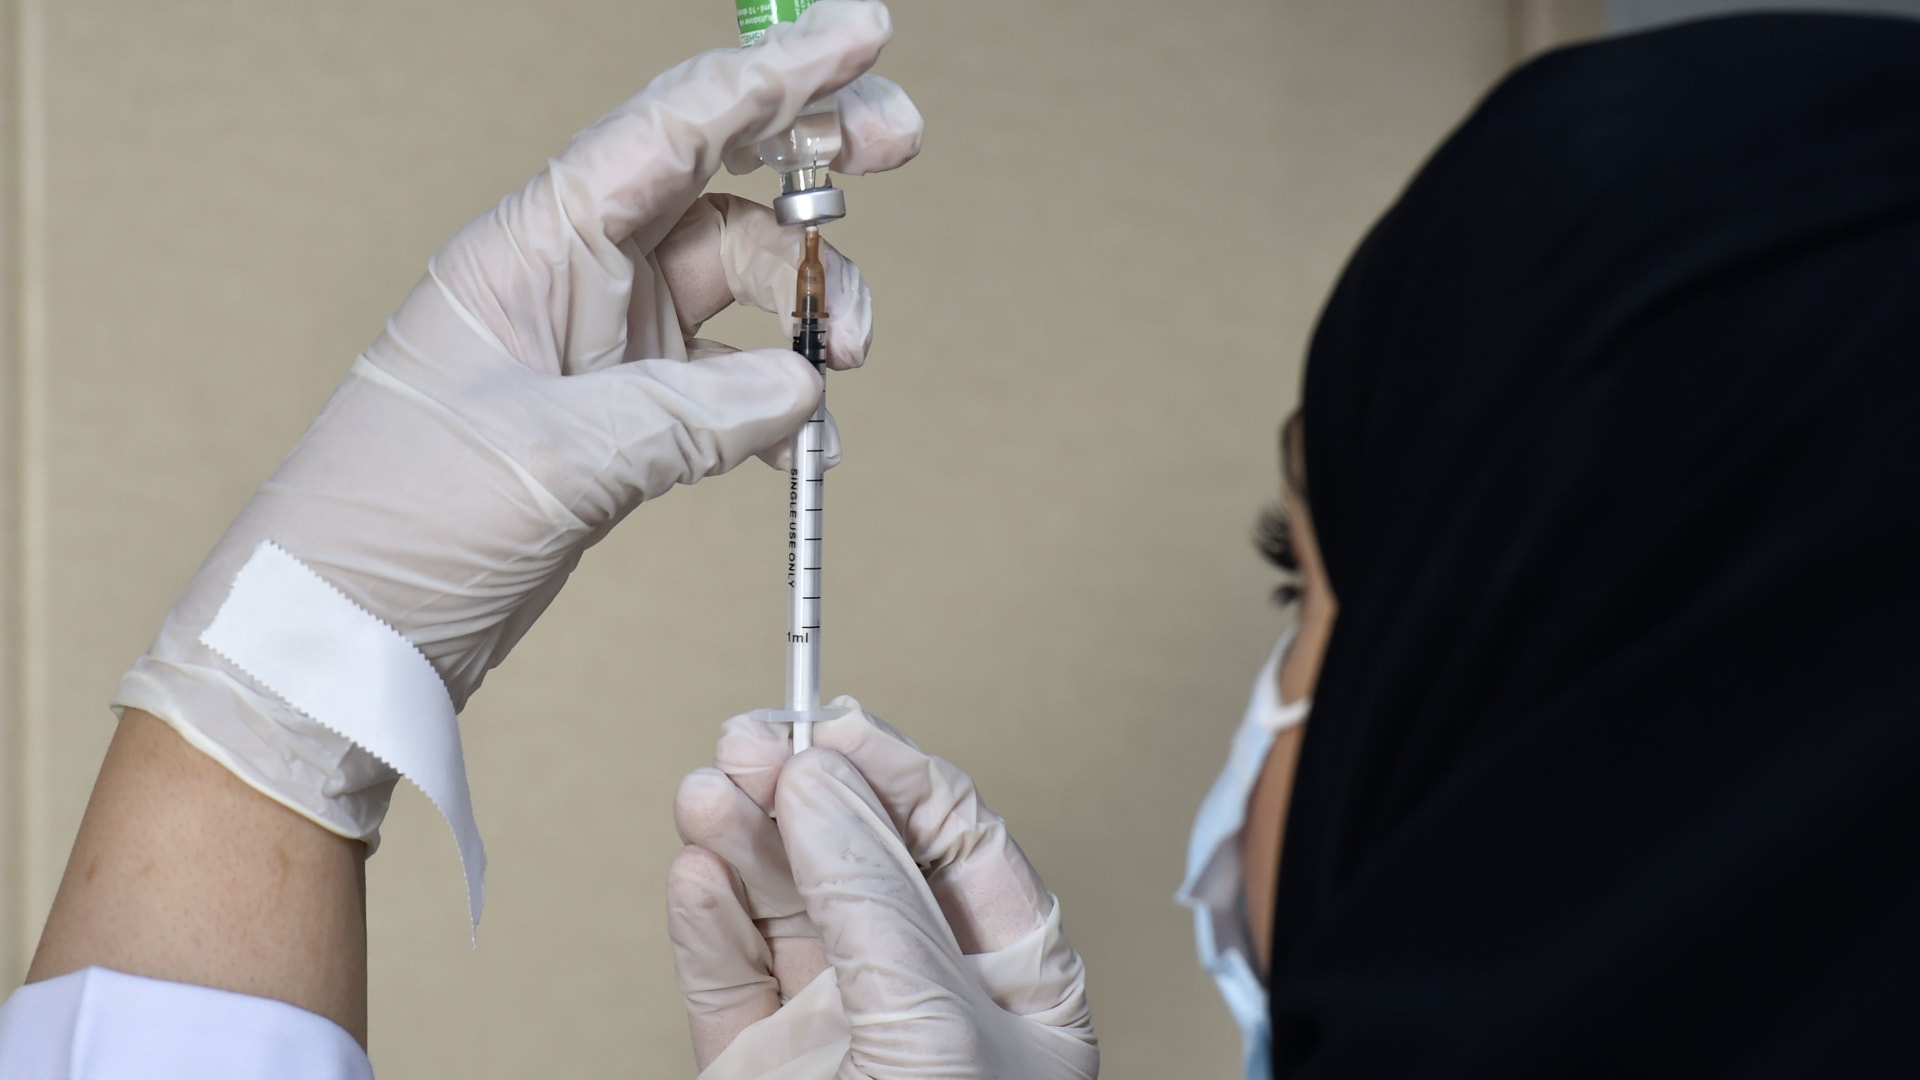 السعودية: يجب على الطلبة الذين يبلغون من العمر 12 عاما أو أكثر تلقي جرعتين من لقاح كورونا قبل بدء العام الدراسي